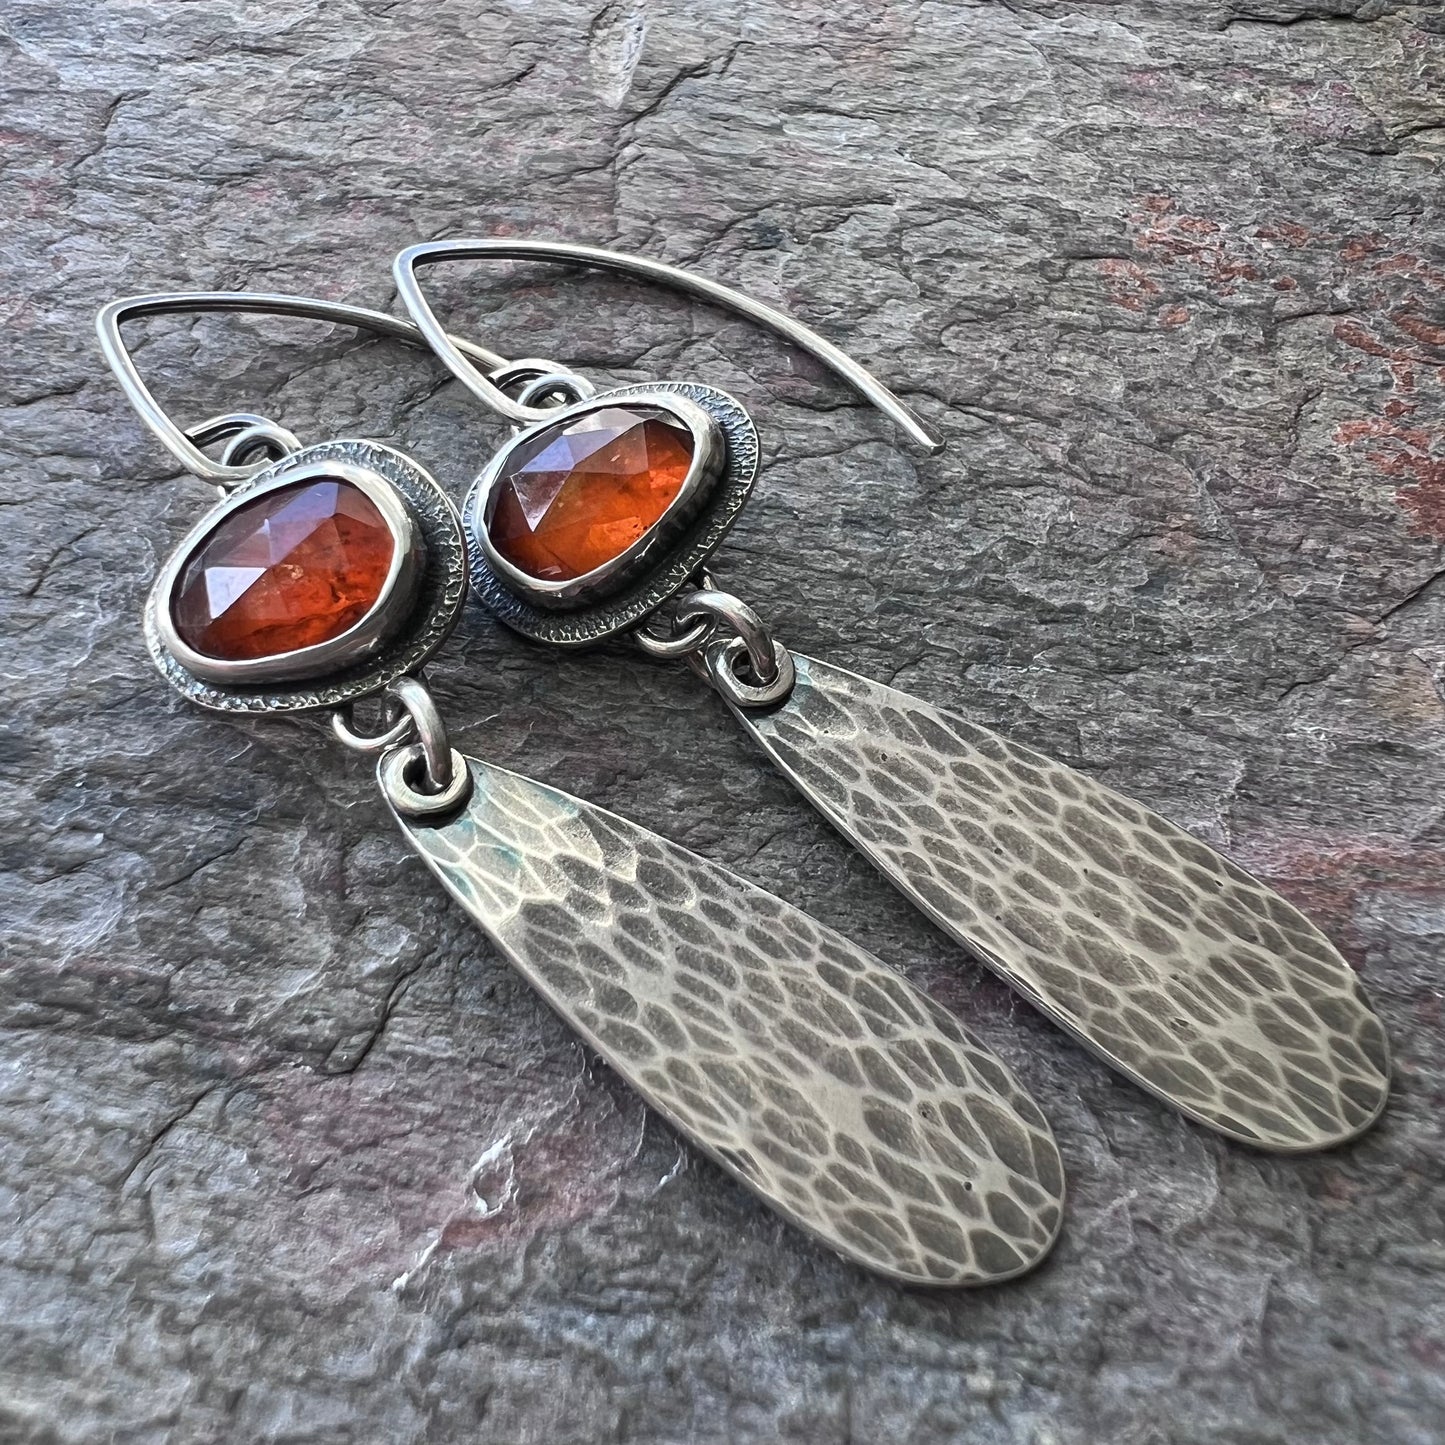 Orange Kyanite Sterling Silver Earrings - Handmade One-of-a-kind Earrings